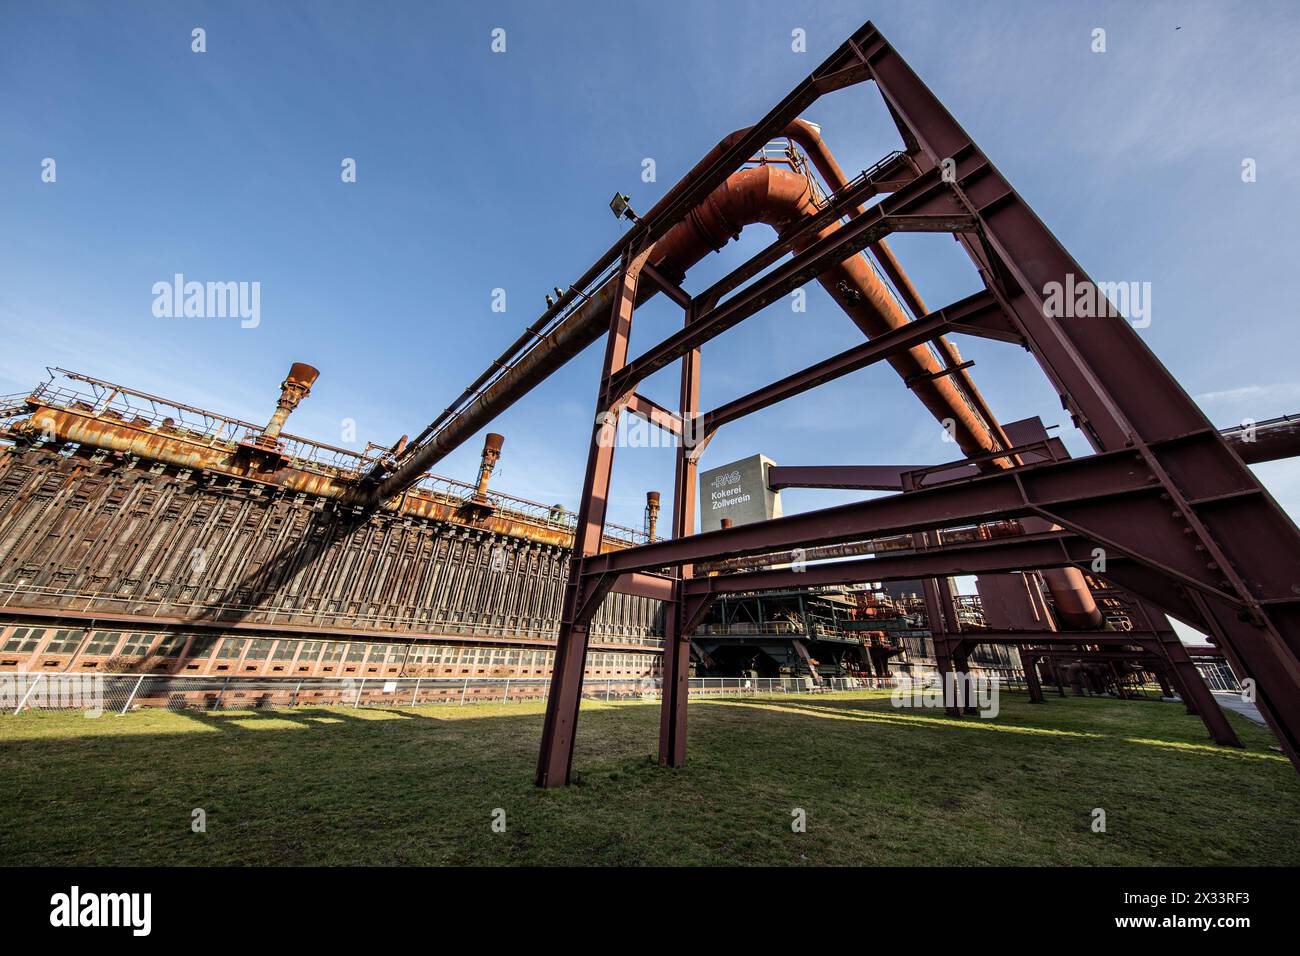 20.02.2021. Essen. Die Zeche Zollverein, auch „Eiffelturm des Ruhrgebietes“ genannt, war ein von 1851 bis 1986 aktives Steinkohlebergwerk in Essen. Be Stock Photo